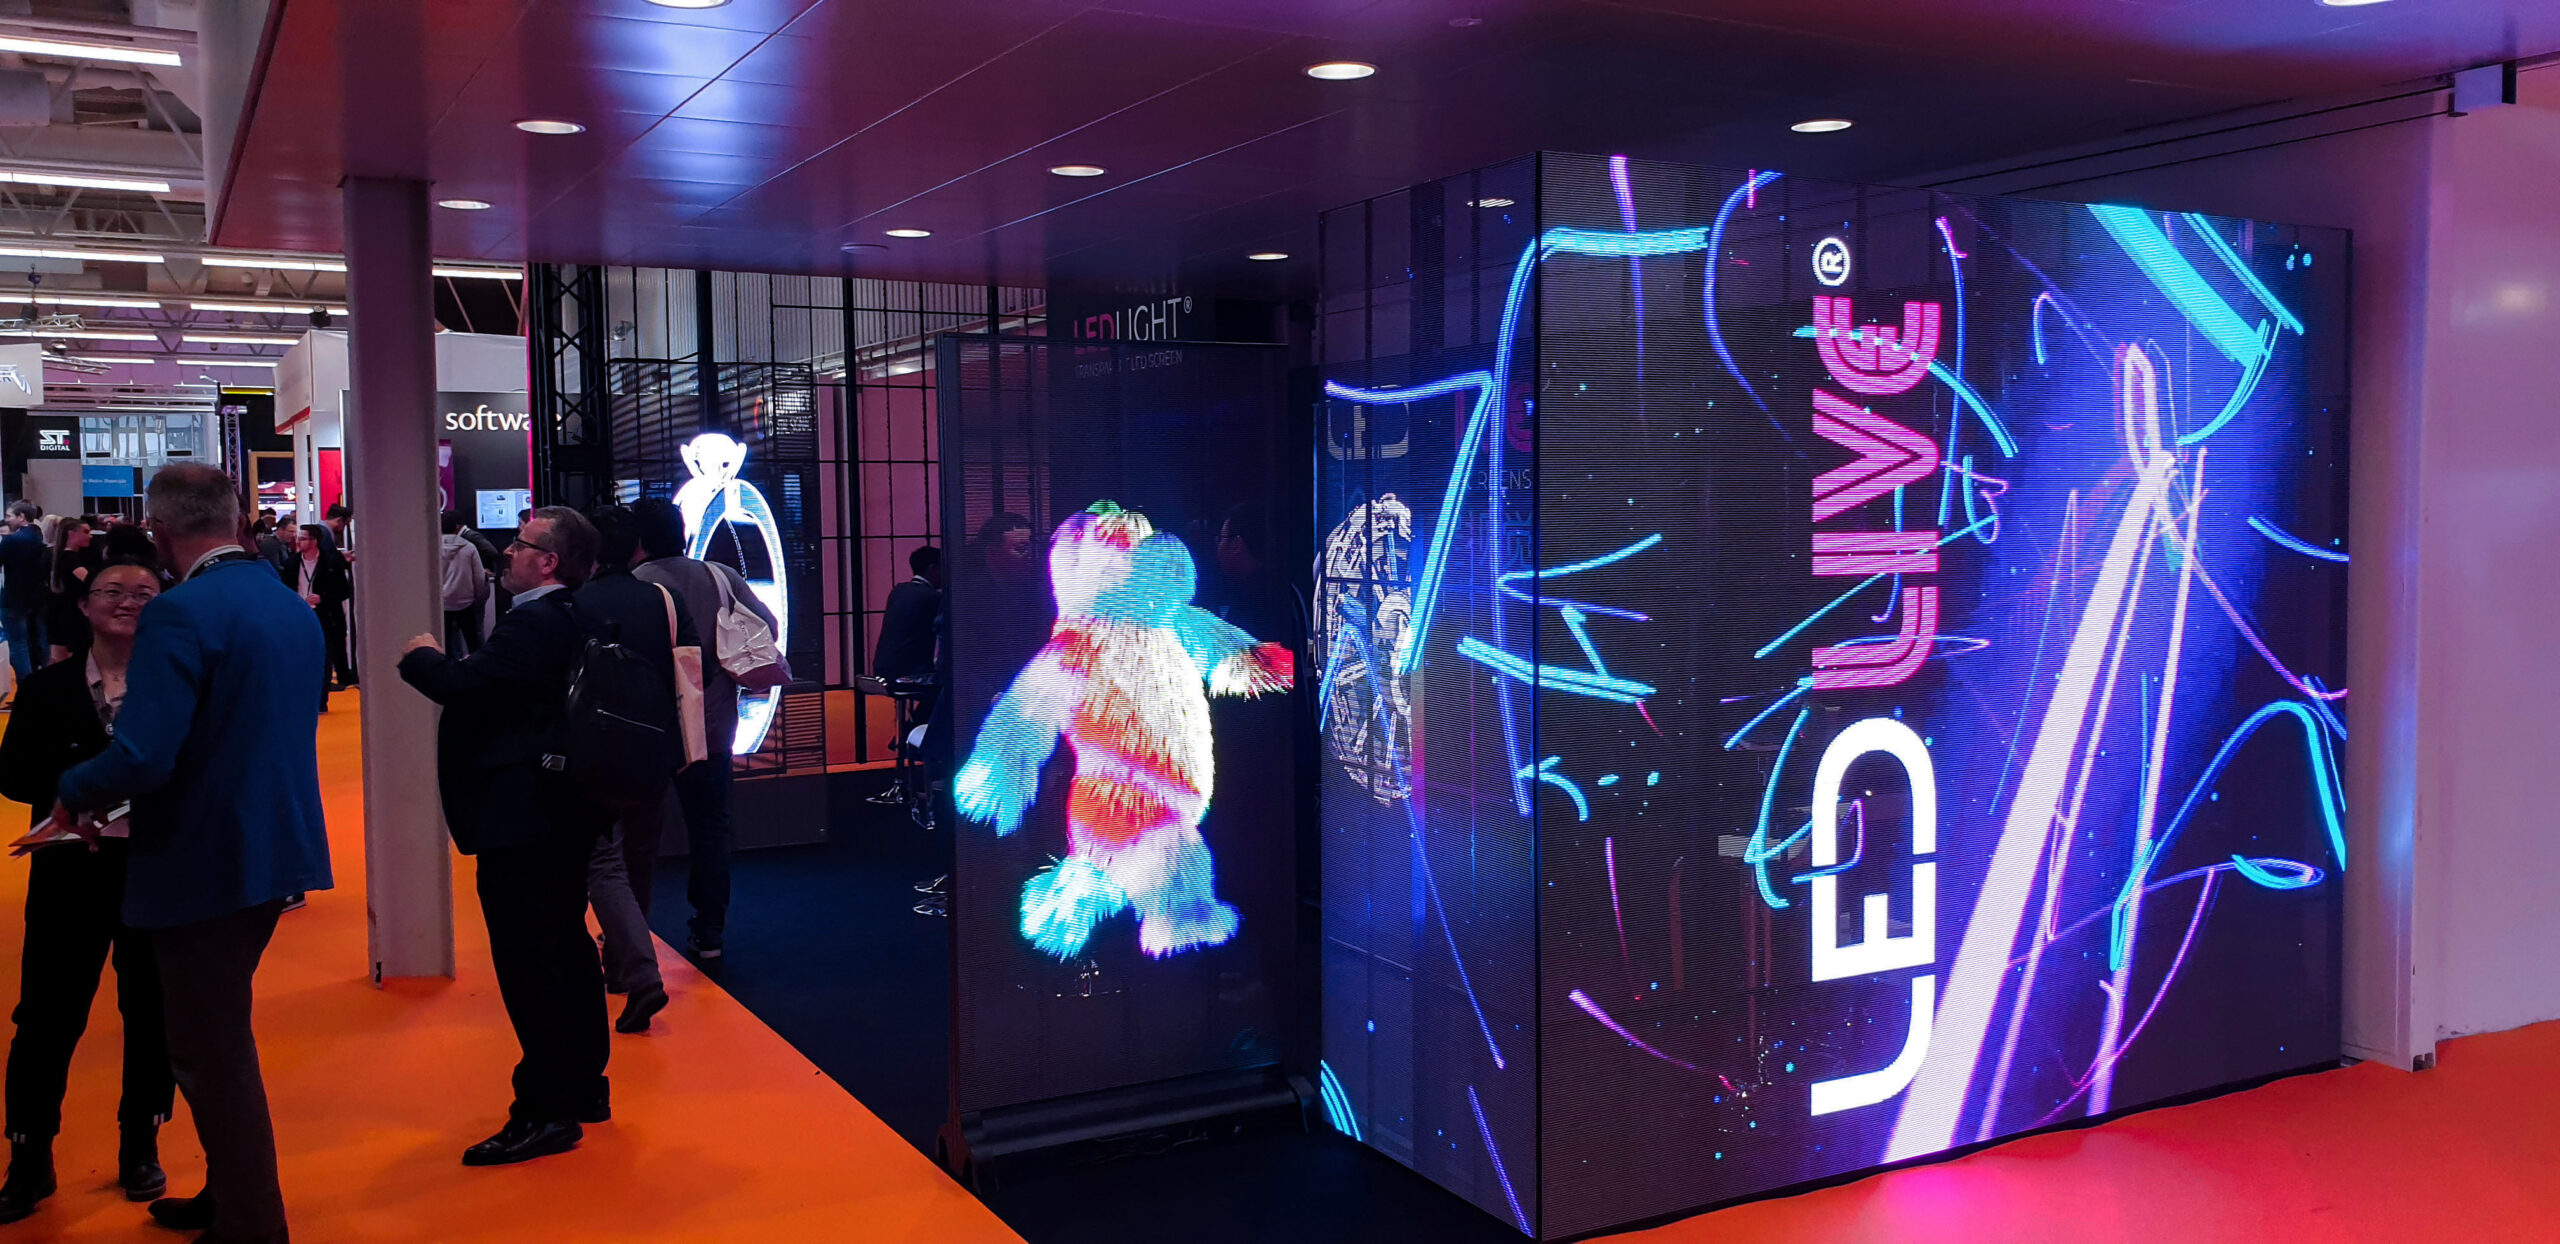 Stoisko ekspozycyjne zbudowane z transparentnych ekranów LED podczas targów Integrated Systems Europe 2020 w Amsterdamie